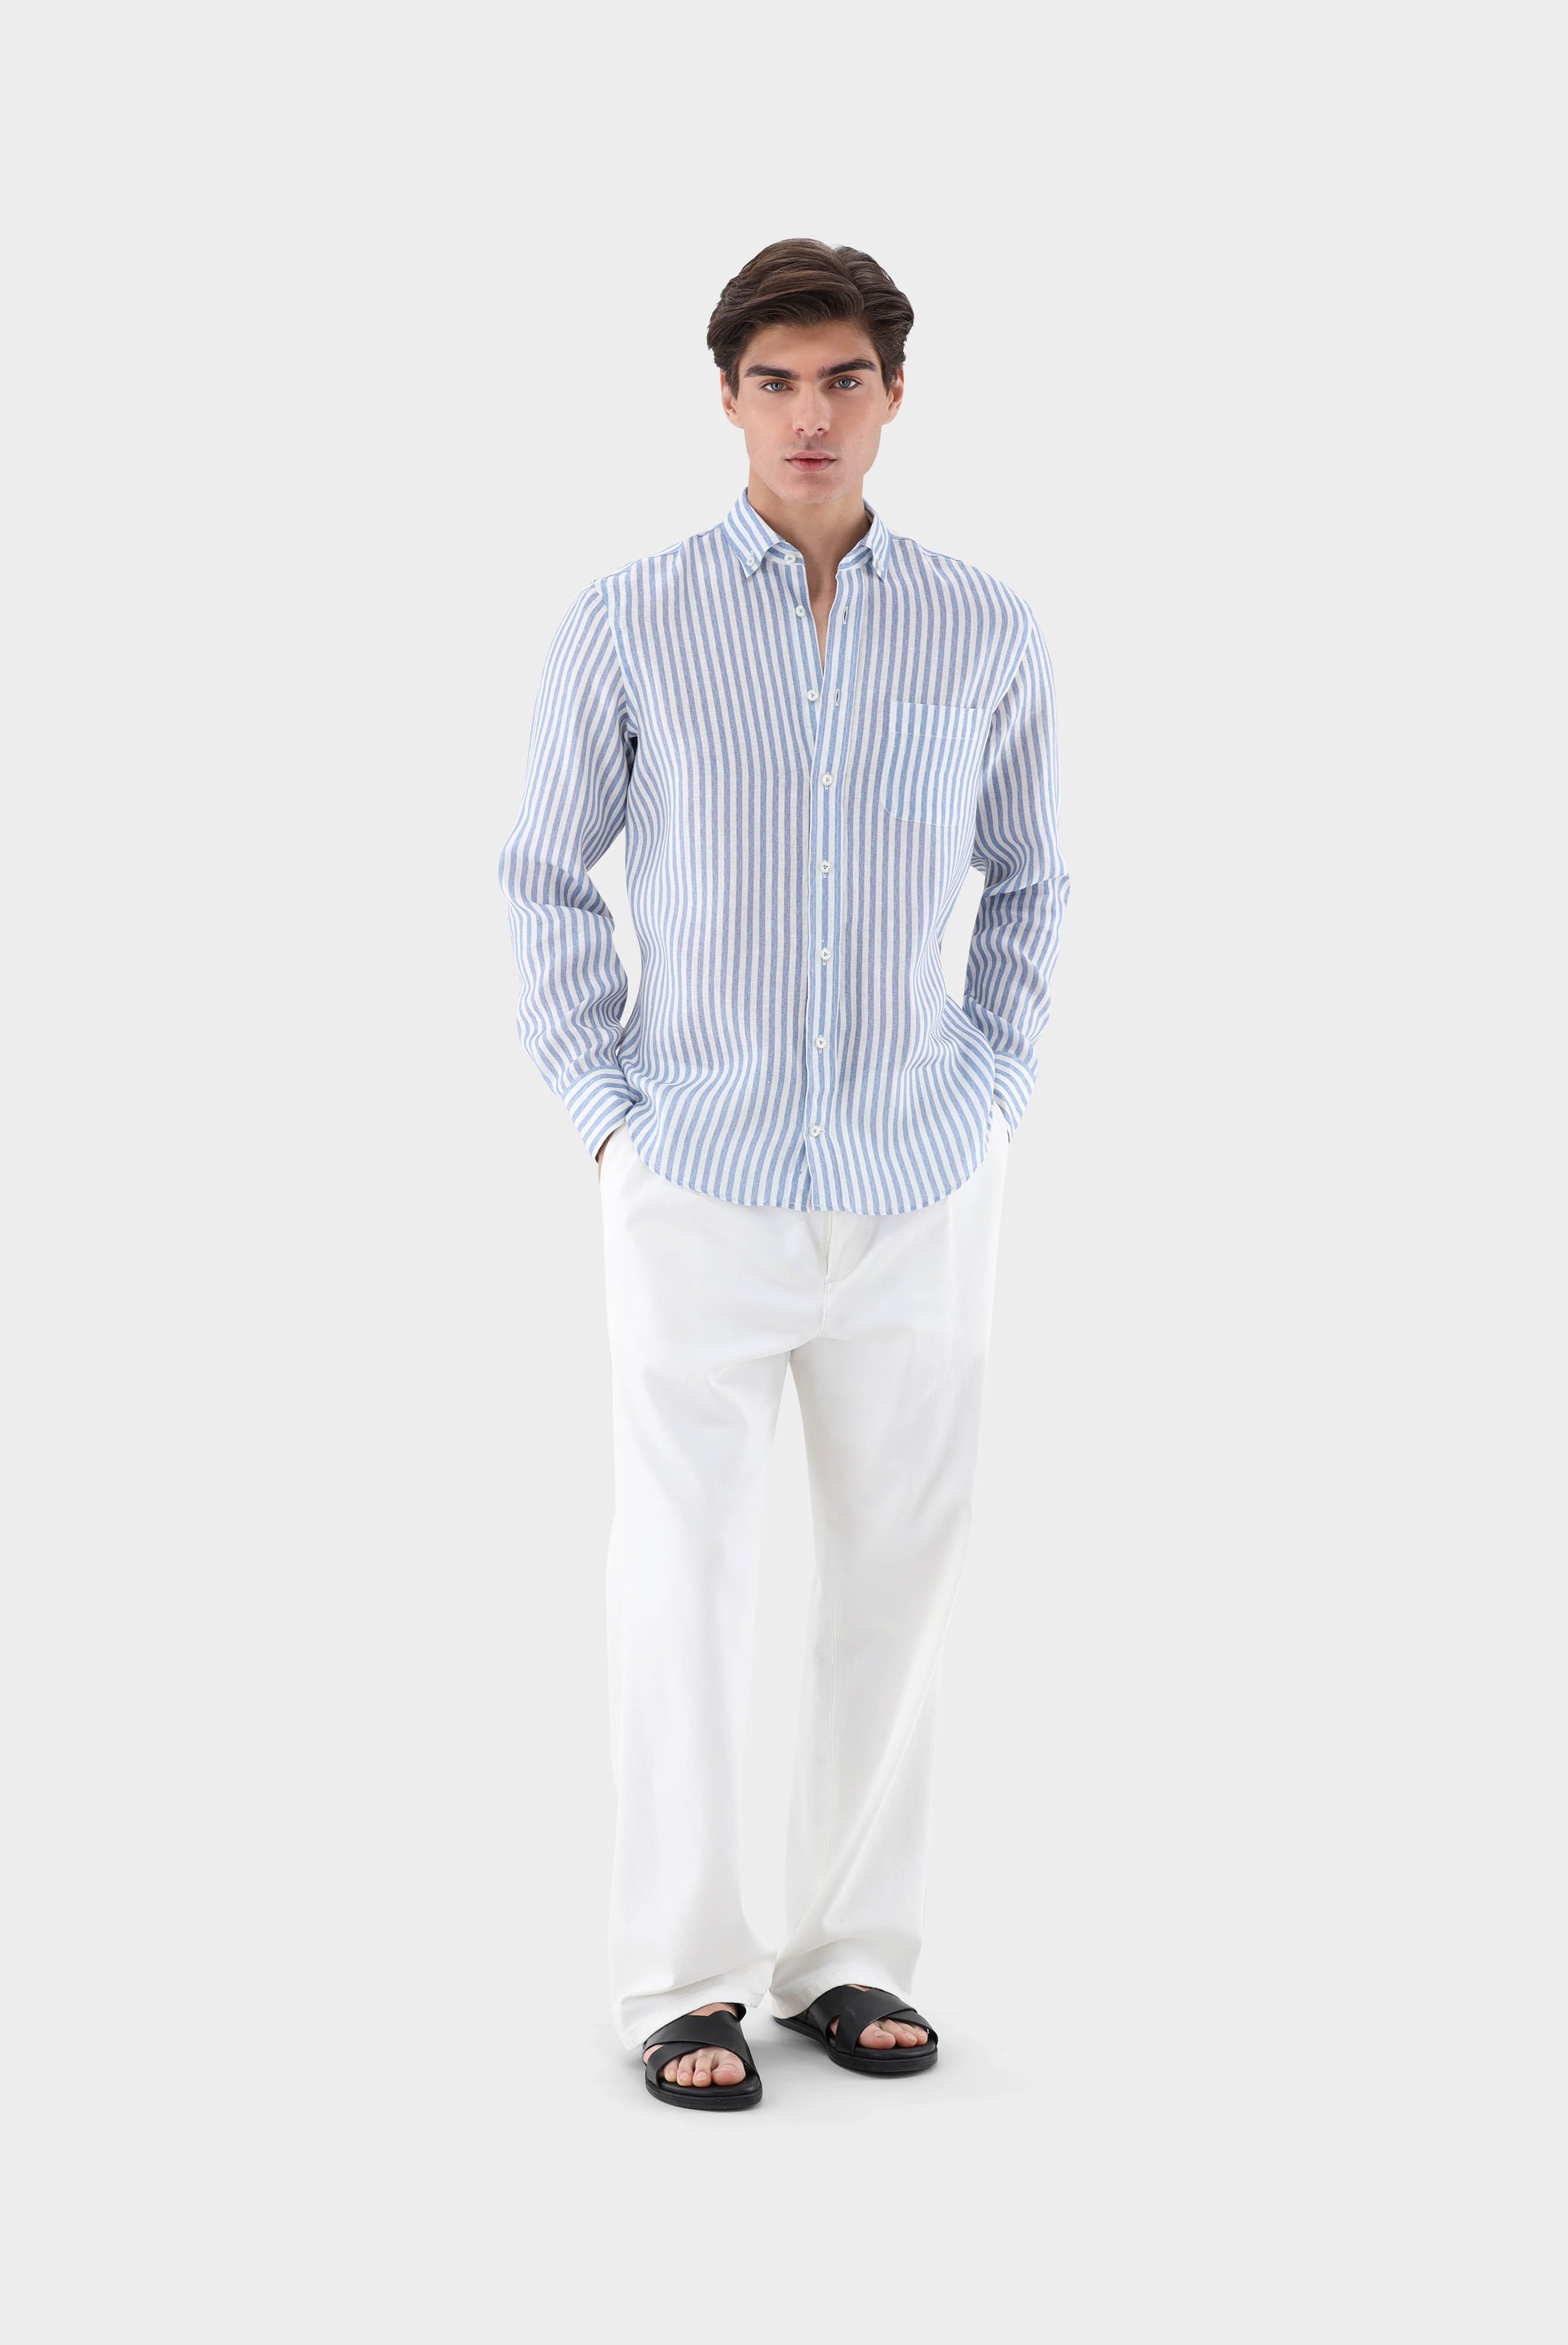 Casual Hemden+Leinenhemd mit Streifen-Druck Tailor Fit+20.2013.9V.170352.740.42